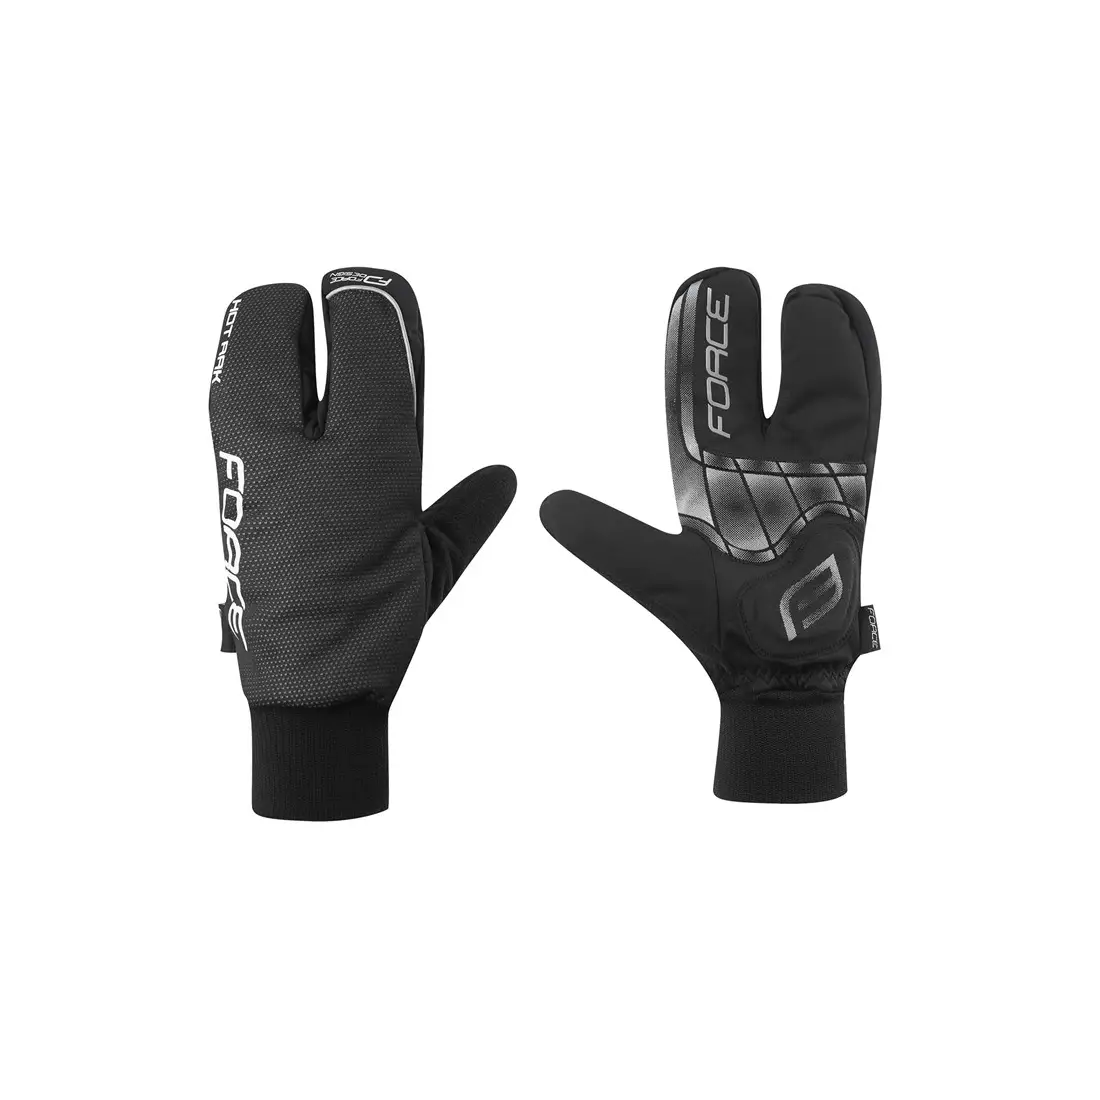 FORCE 90422 HOT RAK 3 zimní cyklistické rukavice, černé